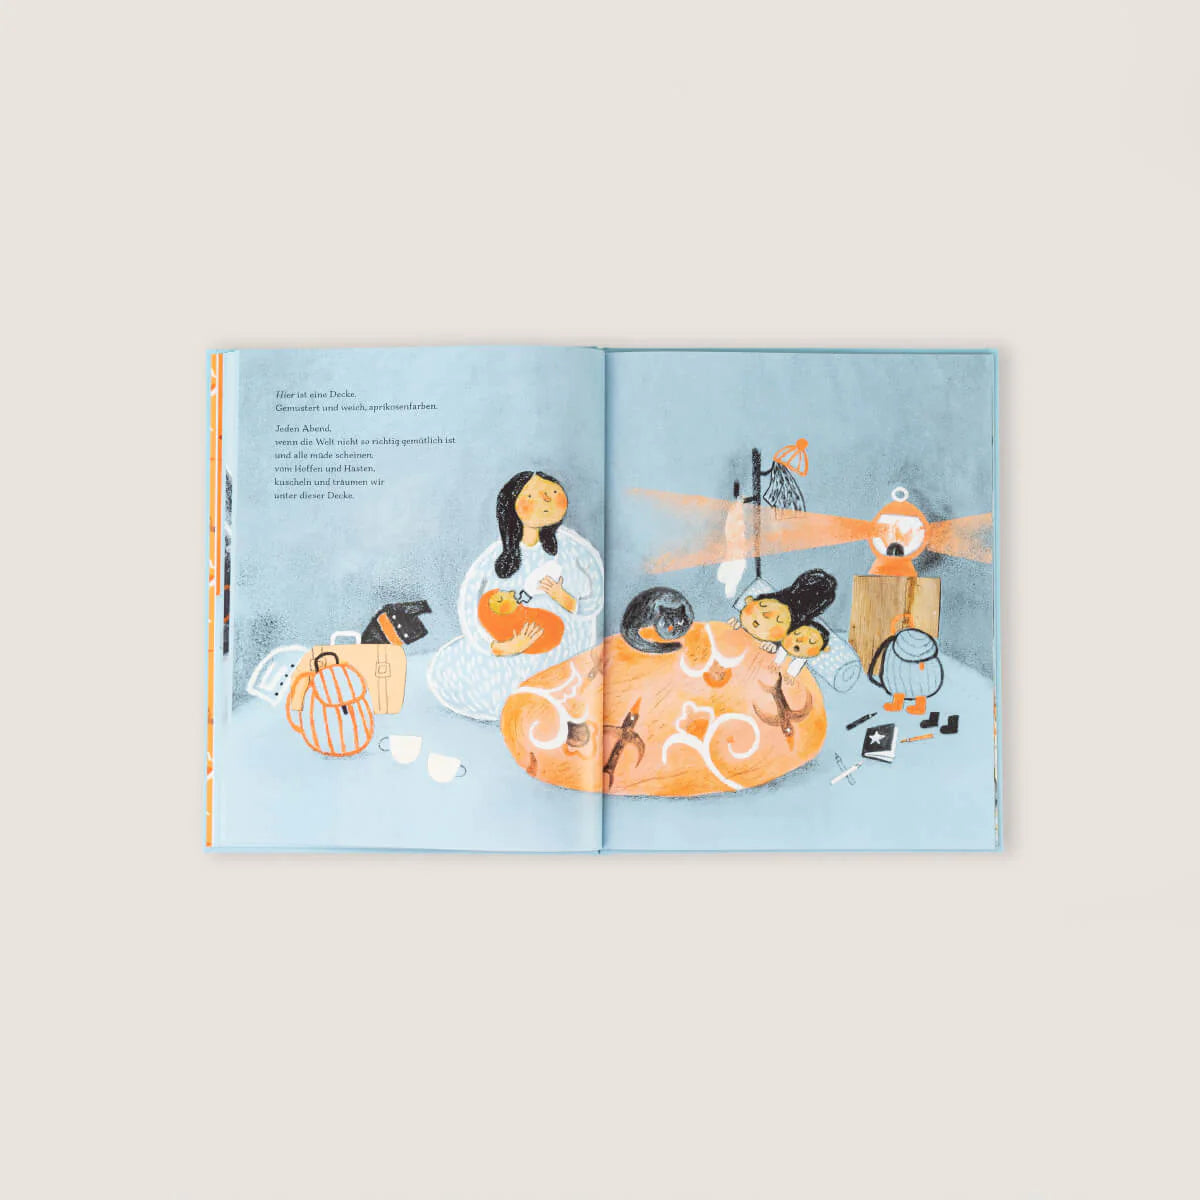 Kinderbuch – “Wir sind hier” von Kyo Maclear